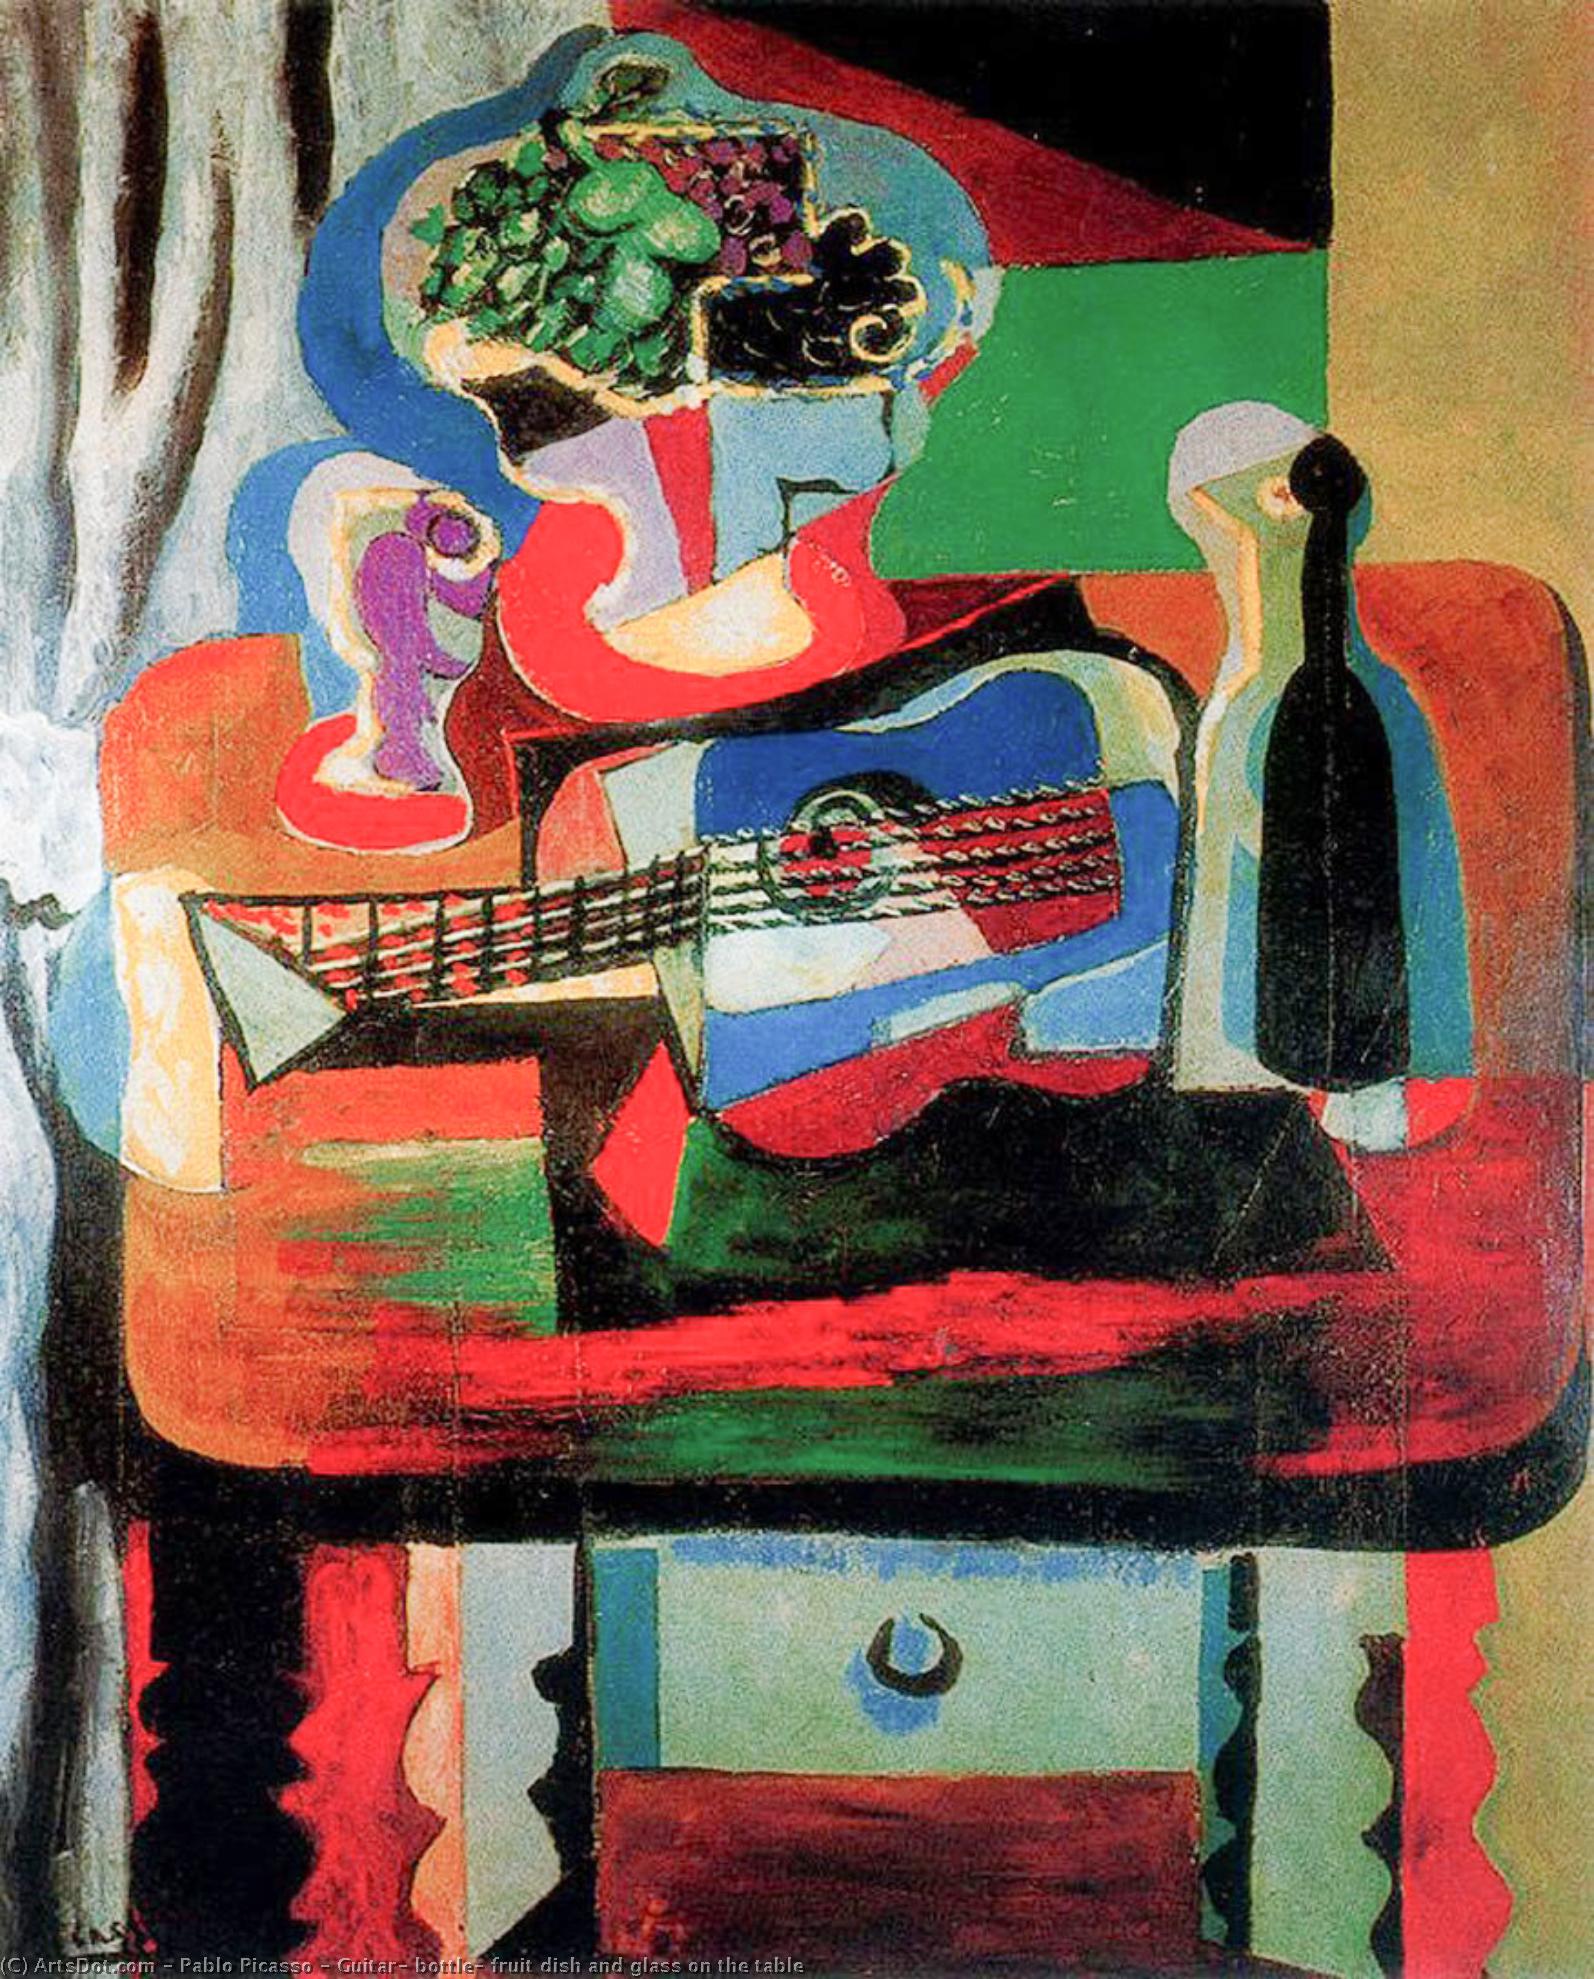 WikiOO.org - Енциклопедия за изящни изкуства - Живопис, Произведения на изкуството Pablo Picasso - Guitar, bottle, fruit dish and glass on the table